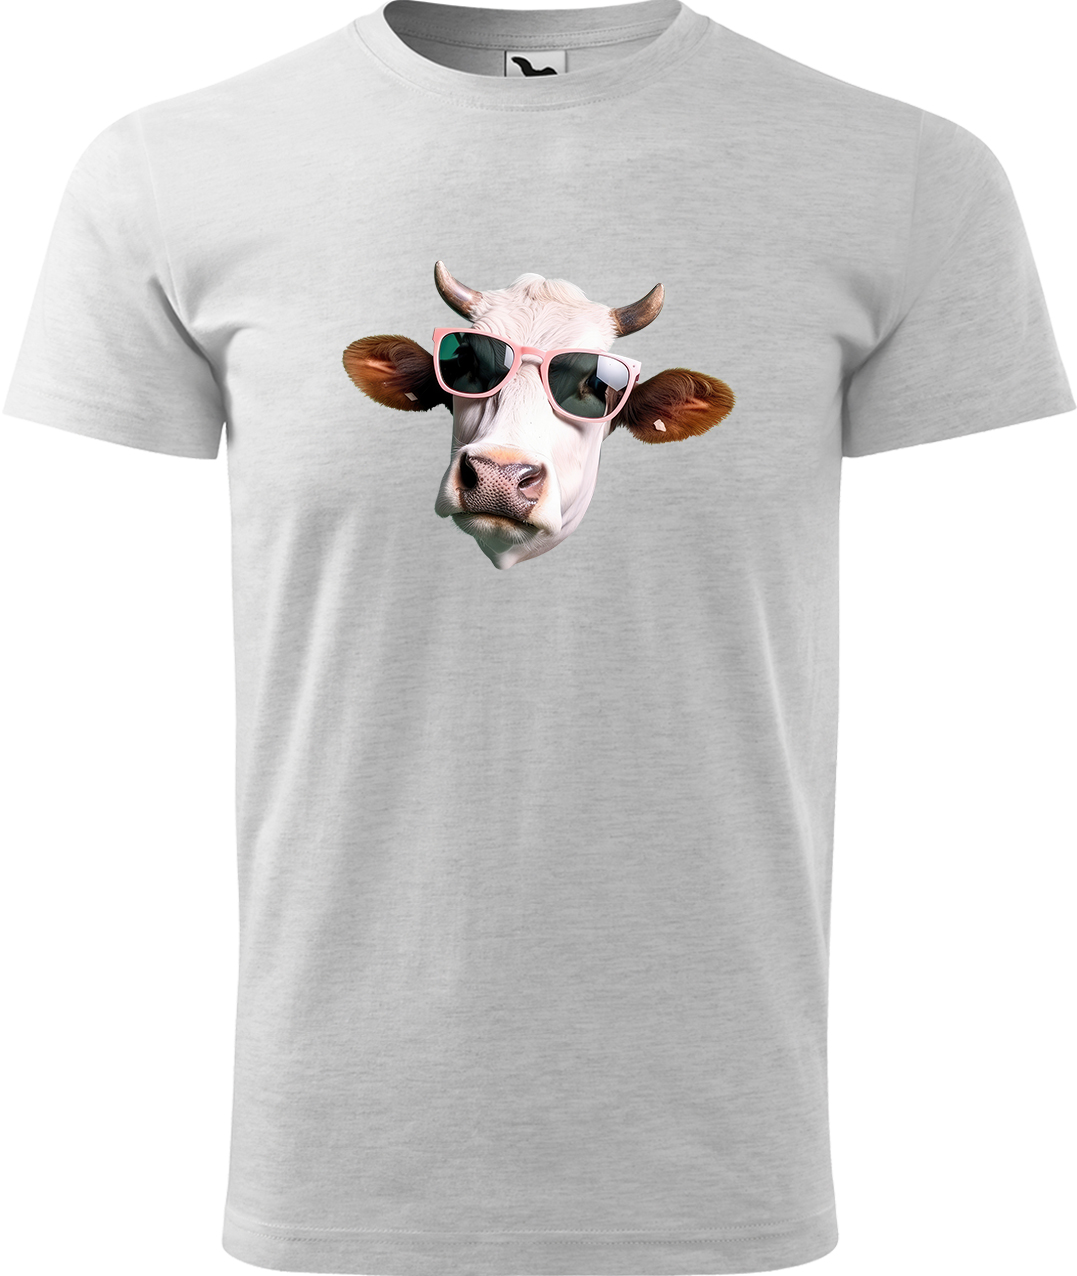 Pánské tričko s krávou - Kráva v brýlích Velikost: XL, Barva: Světle šedý melír (03), Střih: pánský